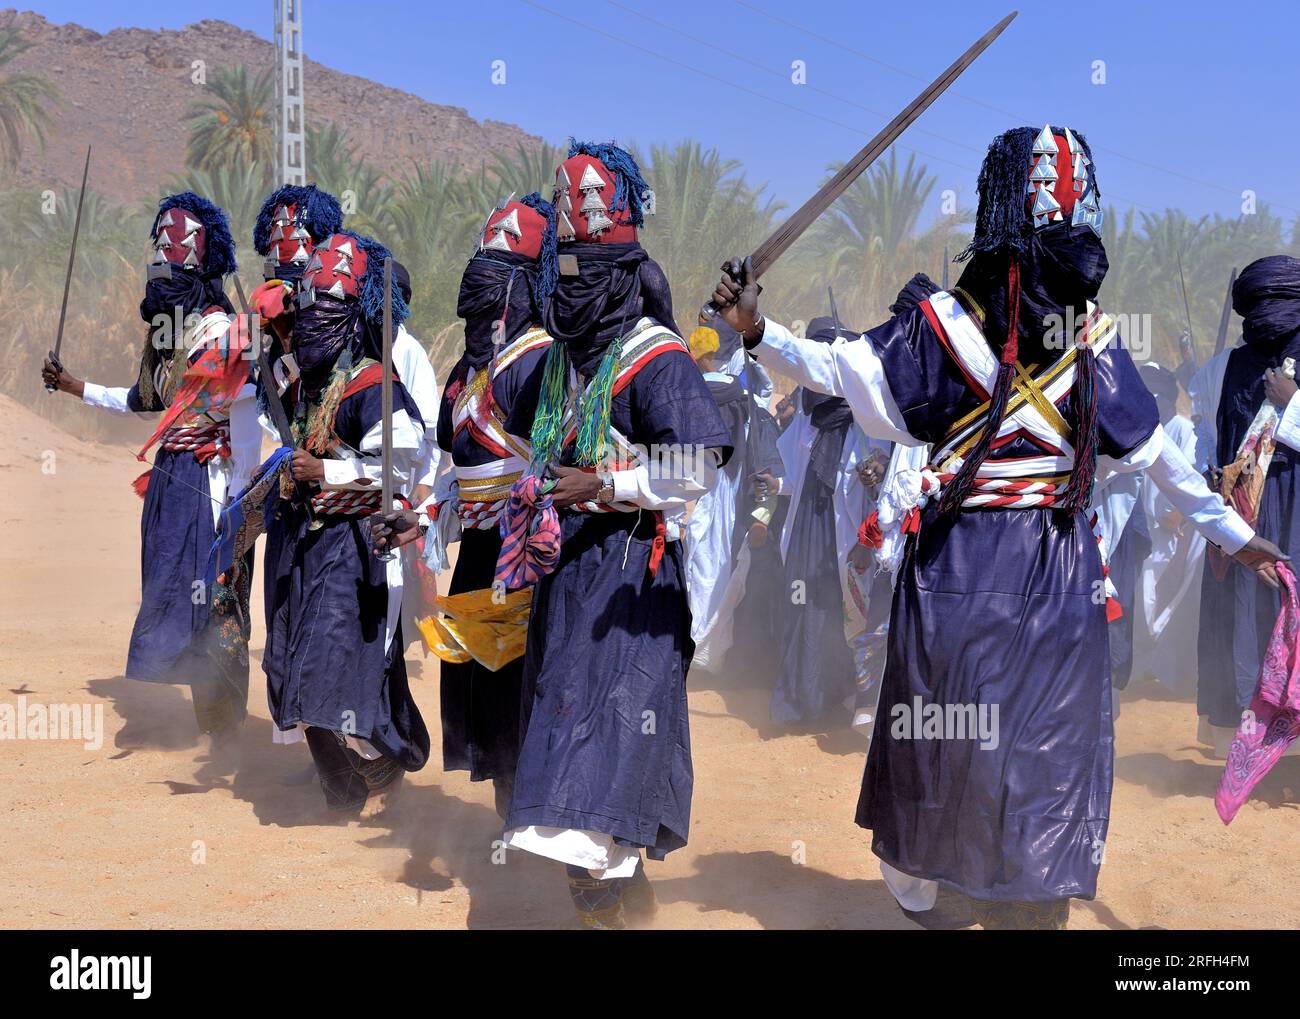 SEBIBA TOUAREG FESTIVAL NELL'OASI DI DJANET IN ALGERIA Foto Stock